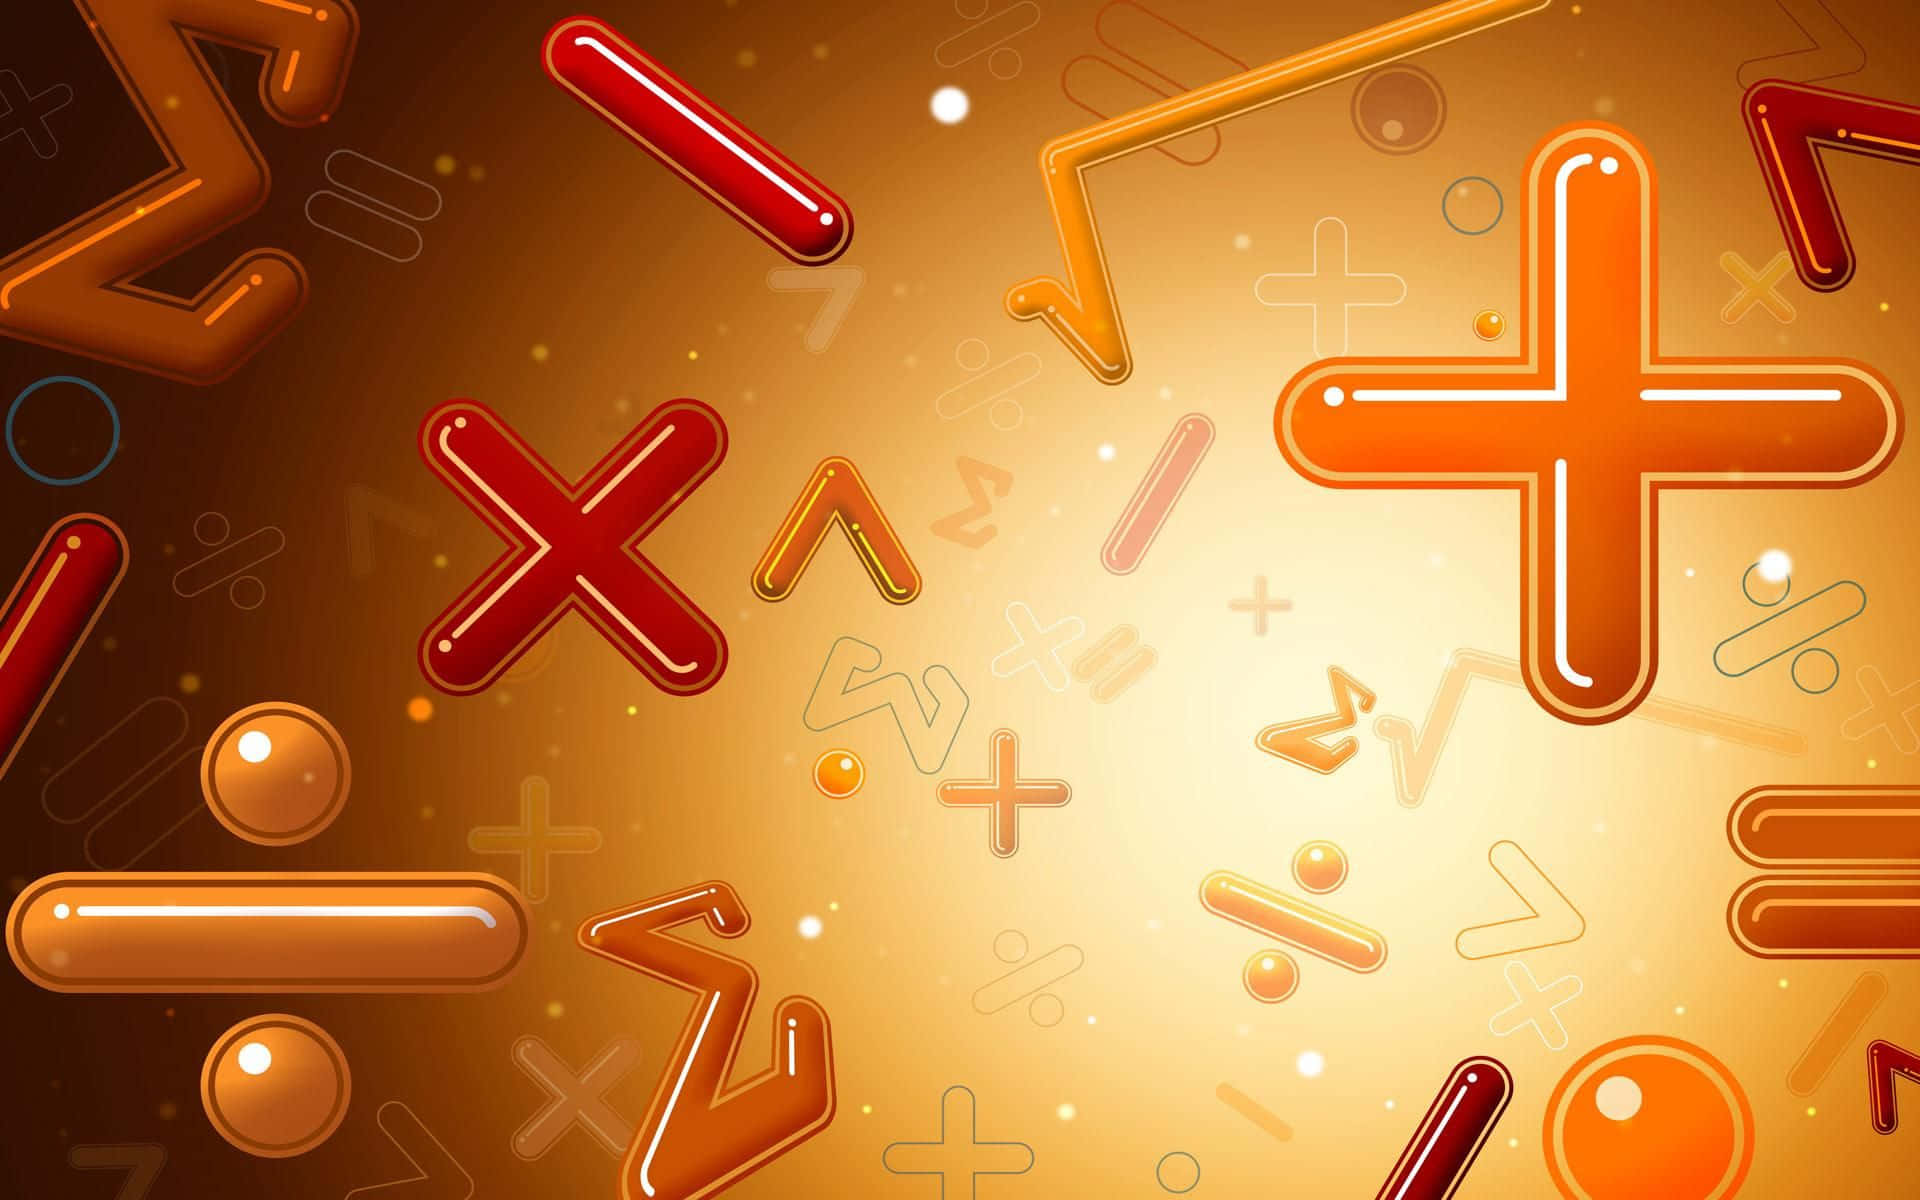 Matematiskasymboler Och Nummer På En Brun Bakgrund